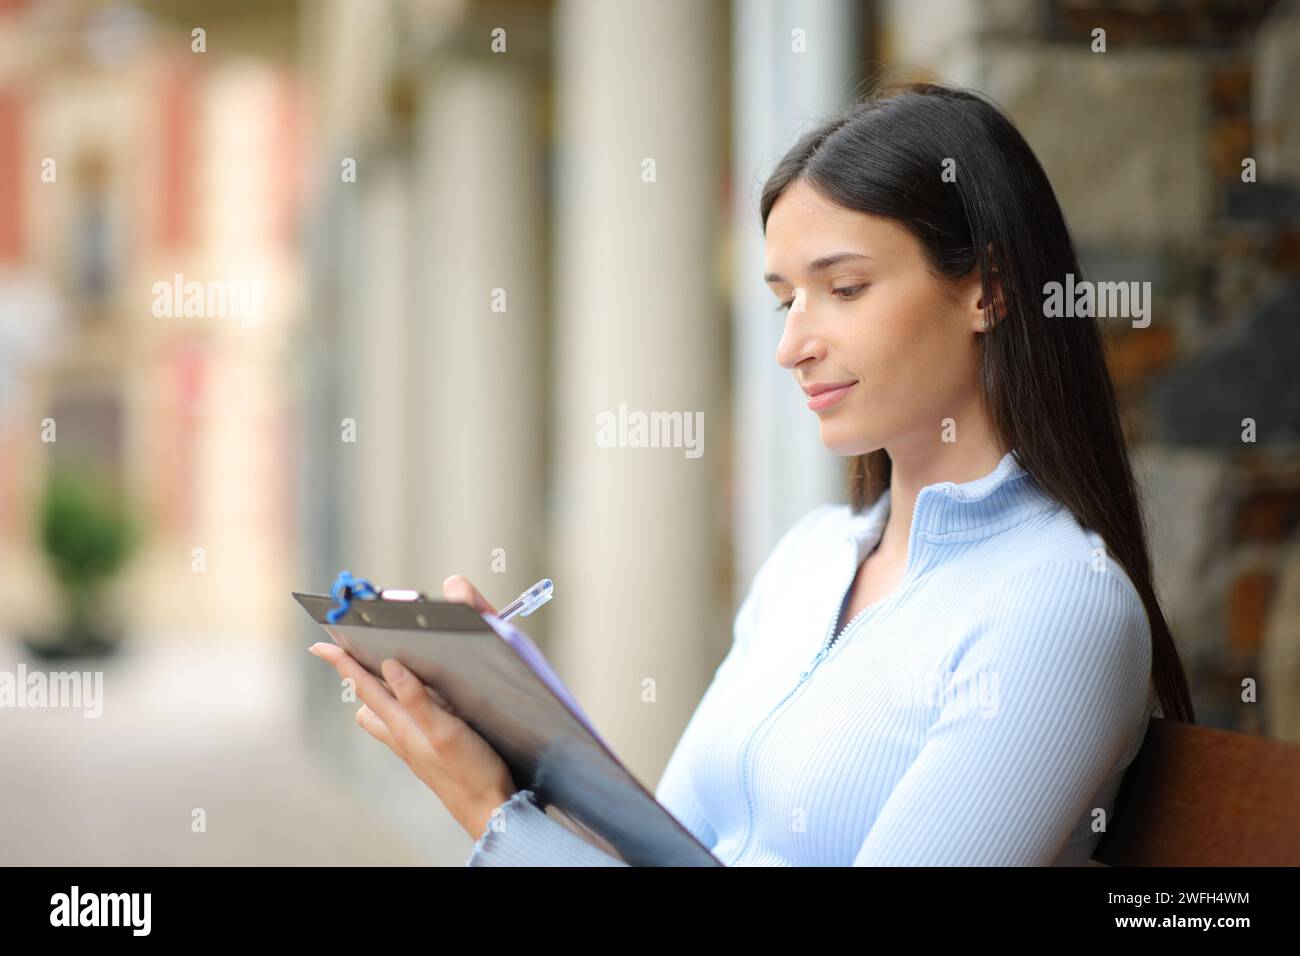 Ernsthafte Frau, die das Formular ausfüllt, sitzt auf einer Bank auf der Straße Stockfoto